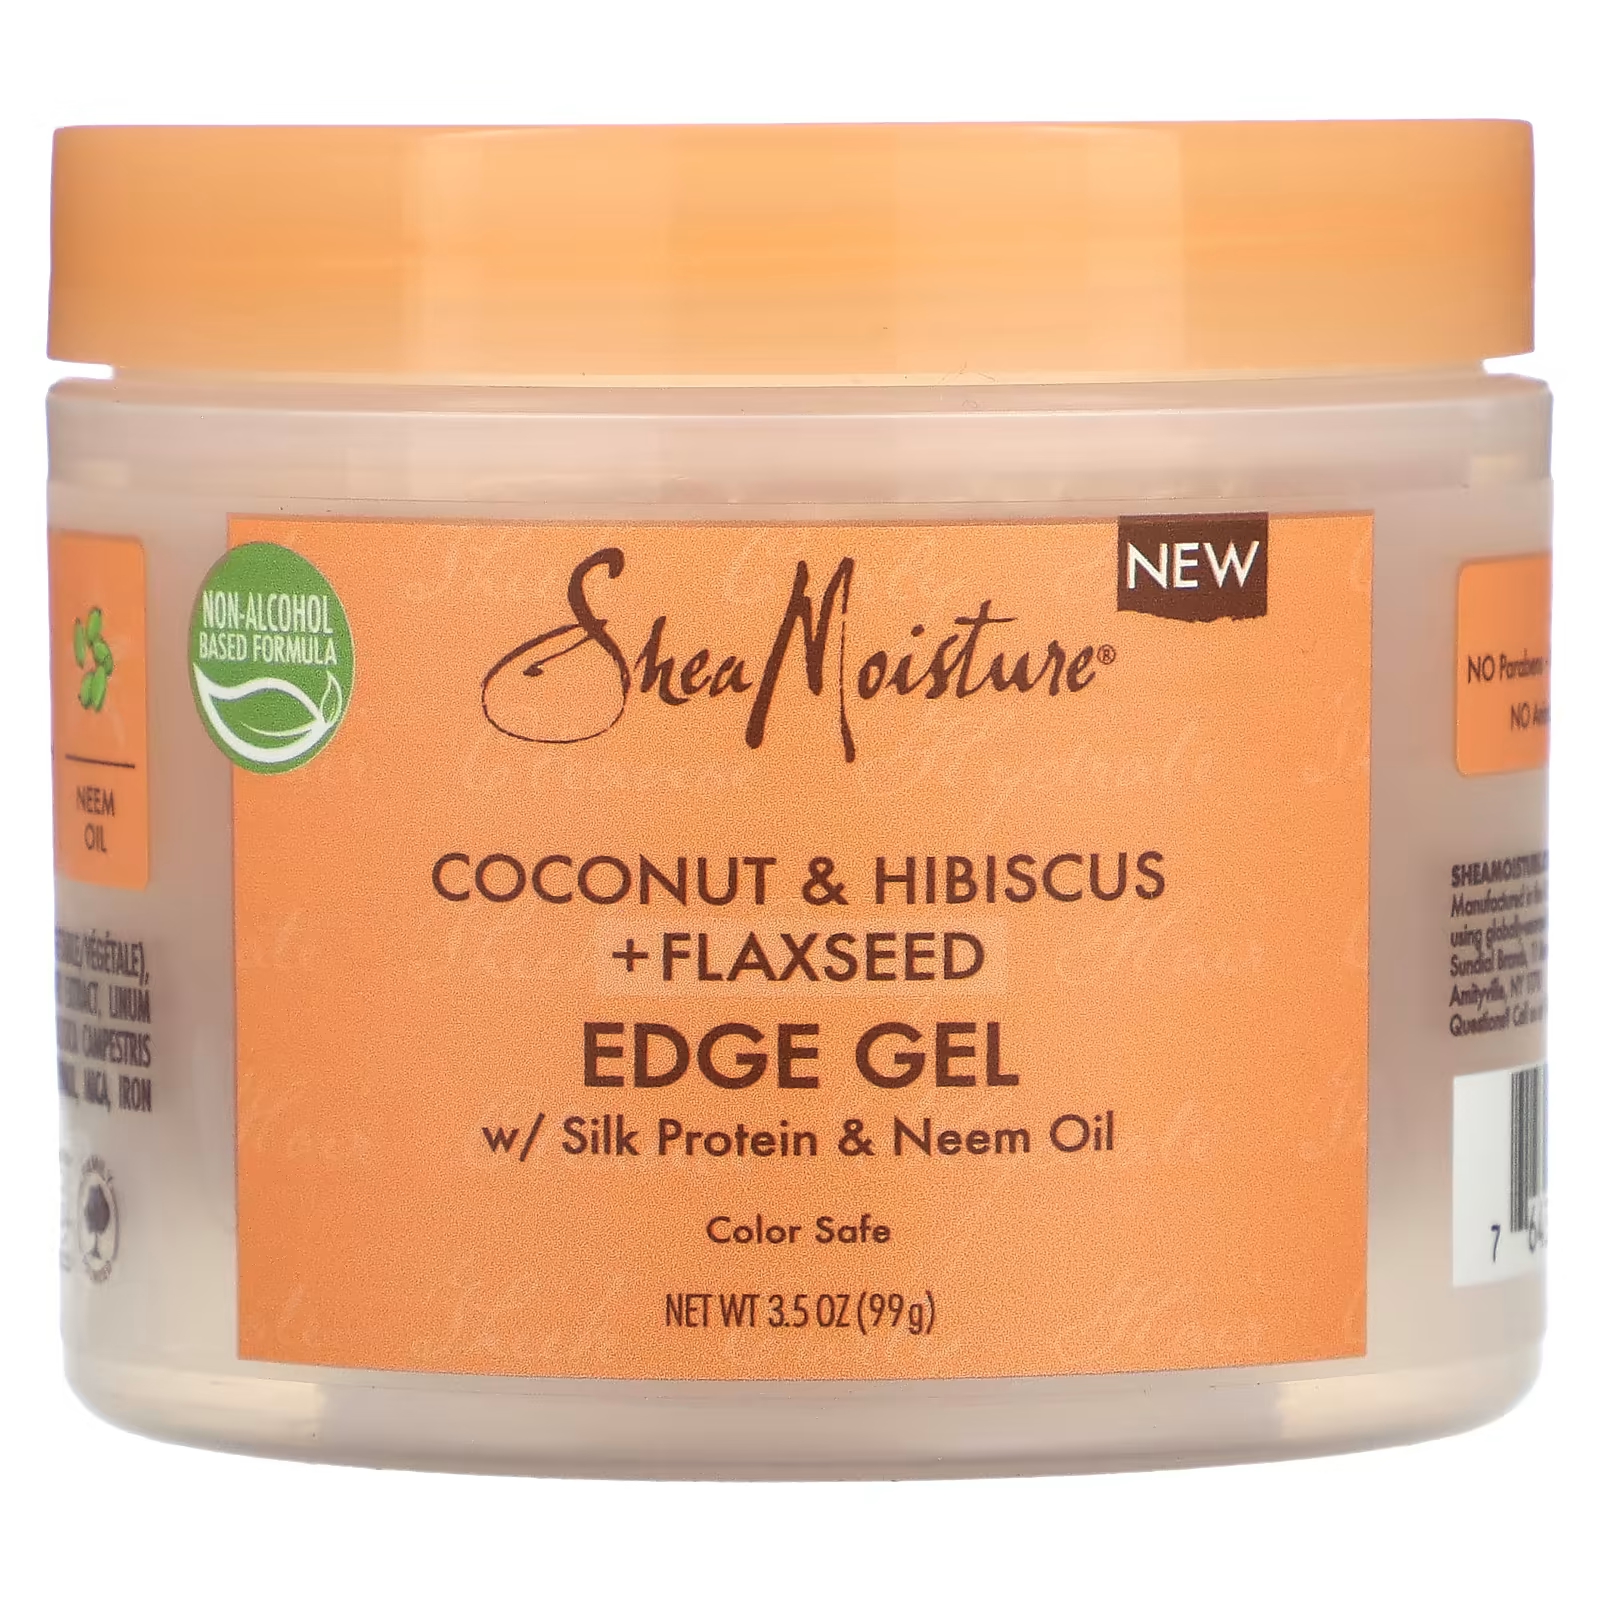 Гель для волос SheaMoisture Edge Gel кокос гибискус и льняное семя, 99г sheamoisture гель для укладки кокос гибискус и льняное семя 425 г 15 унций